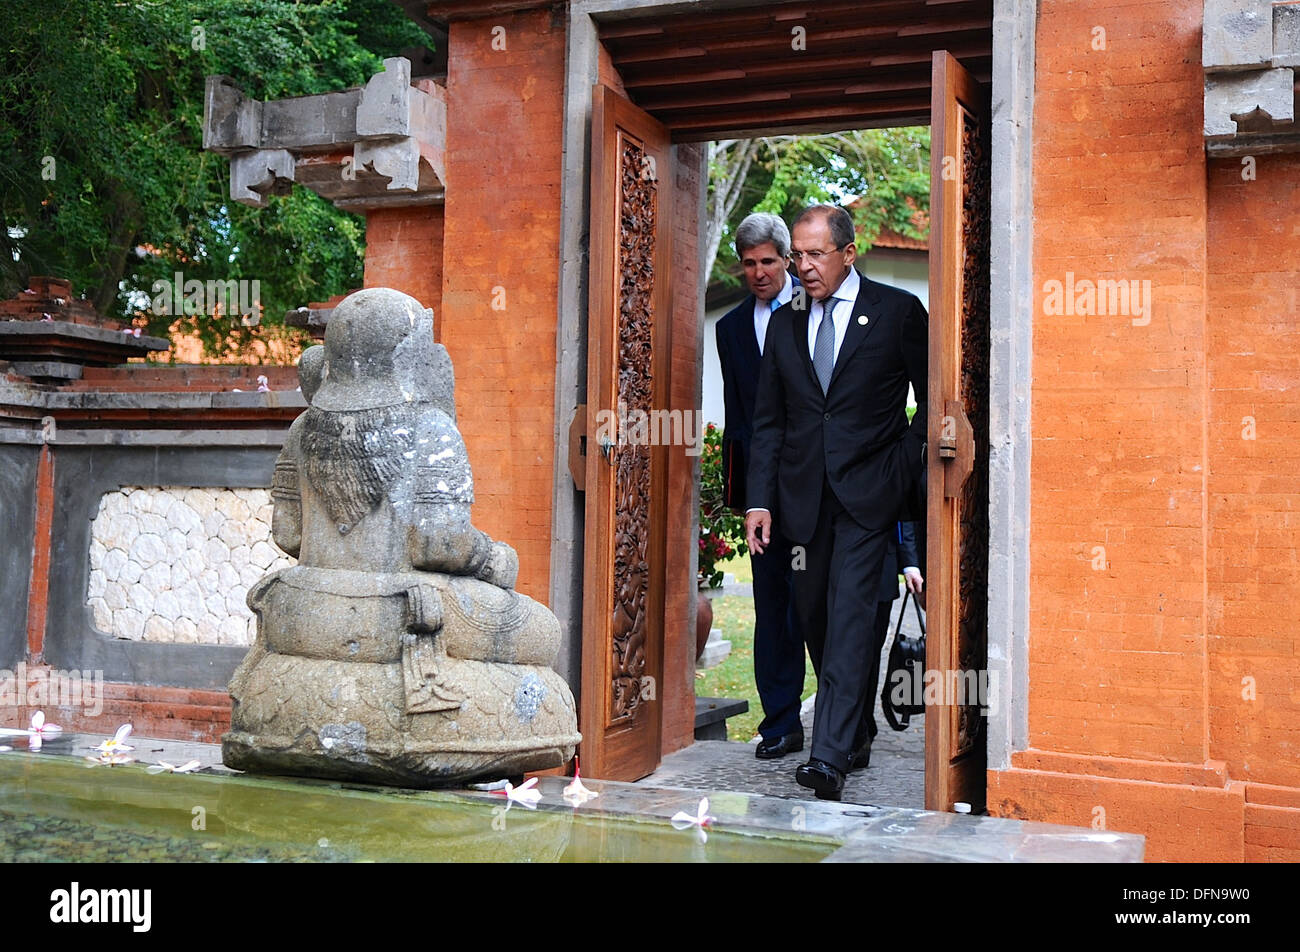 Secrétaire Kerry et Lavrov, Ministre russe des Affaires étrangères, assister aux réunions de l'APEC en Indonésie Banque D'Images